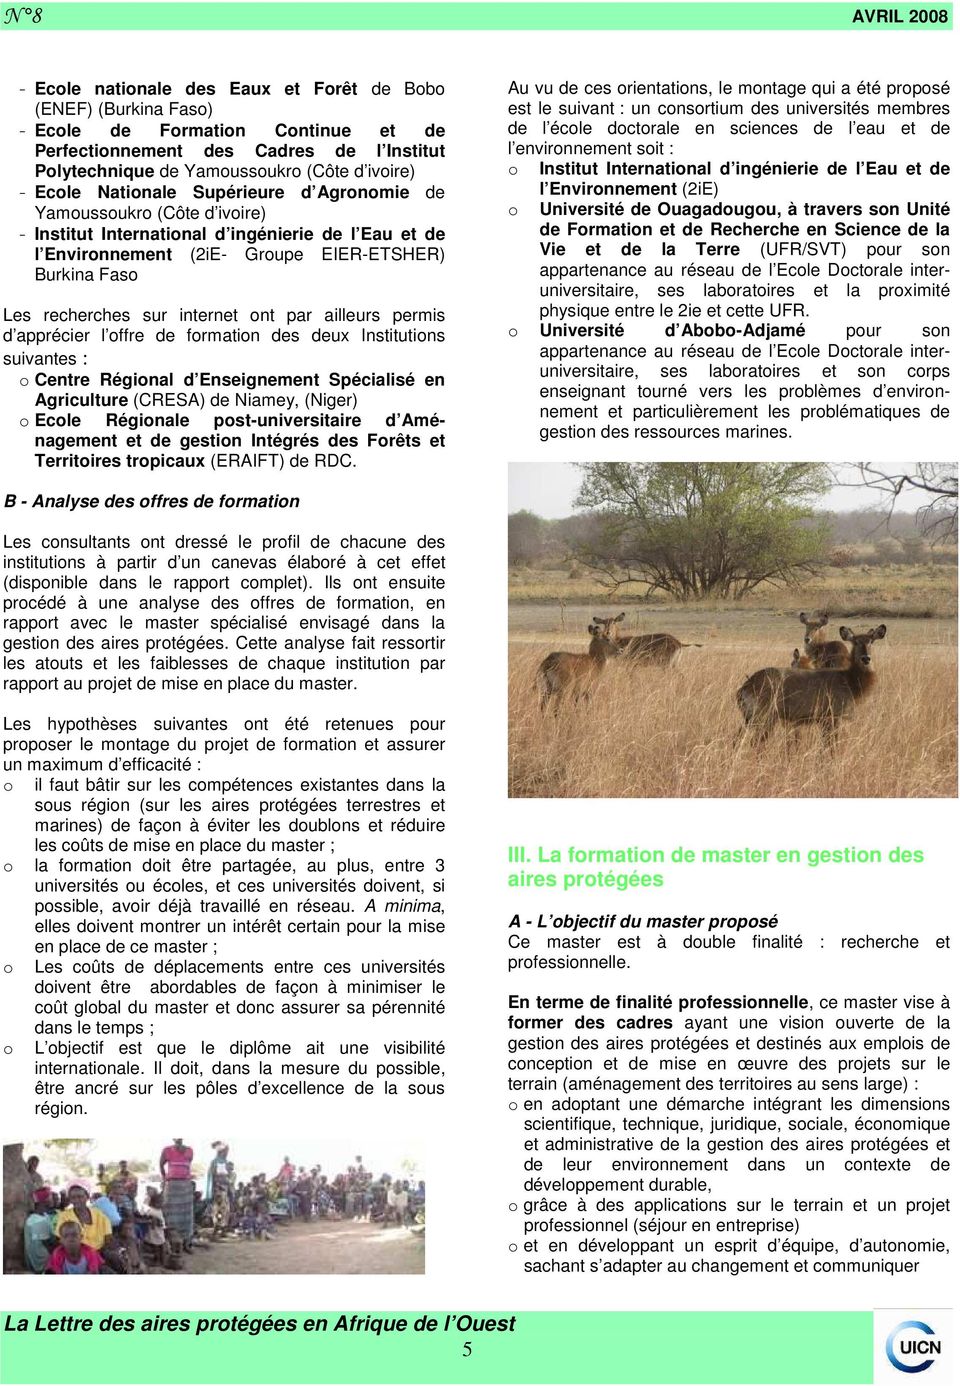 permis d apprécier l ffre de frmatin des deux Institutins suivantes : Centre Réginal d Enseignement Spécialisé en Agriculture (CRESA) de Niamey, (Niger) Ecle Réginale pst-universitaire d Aménagement